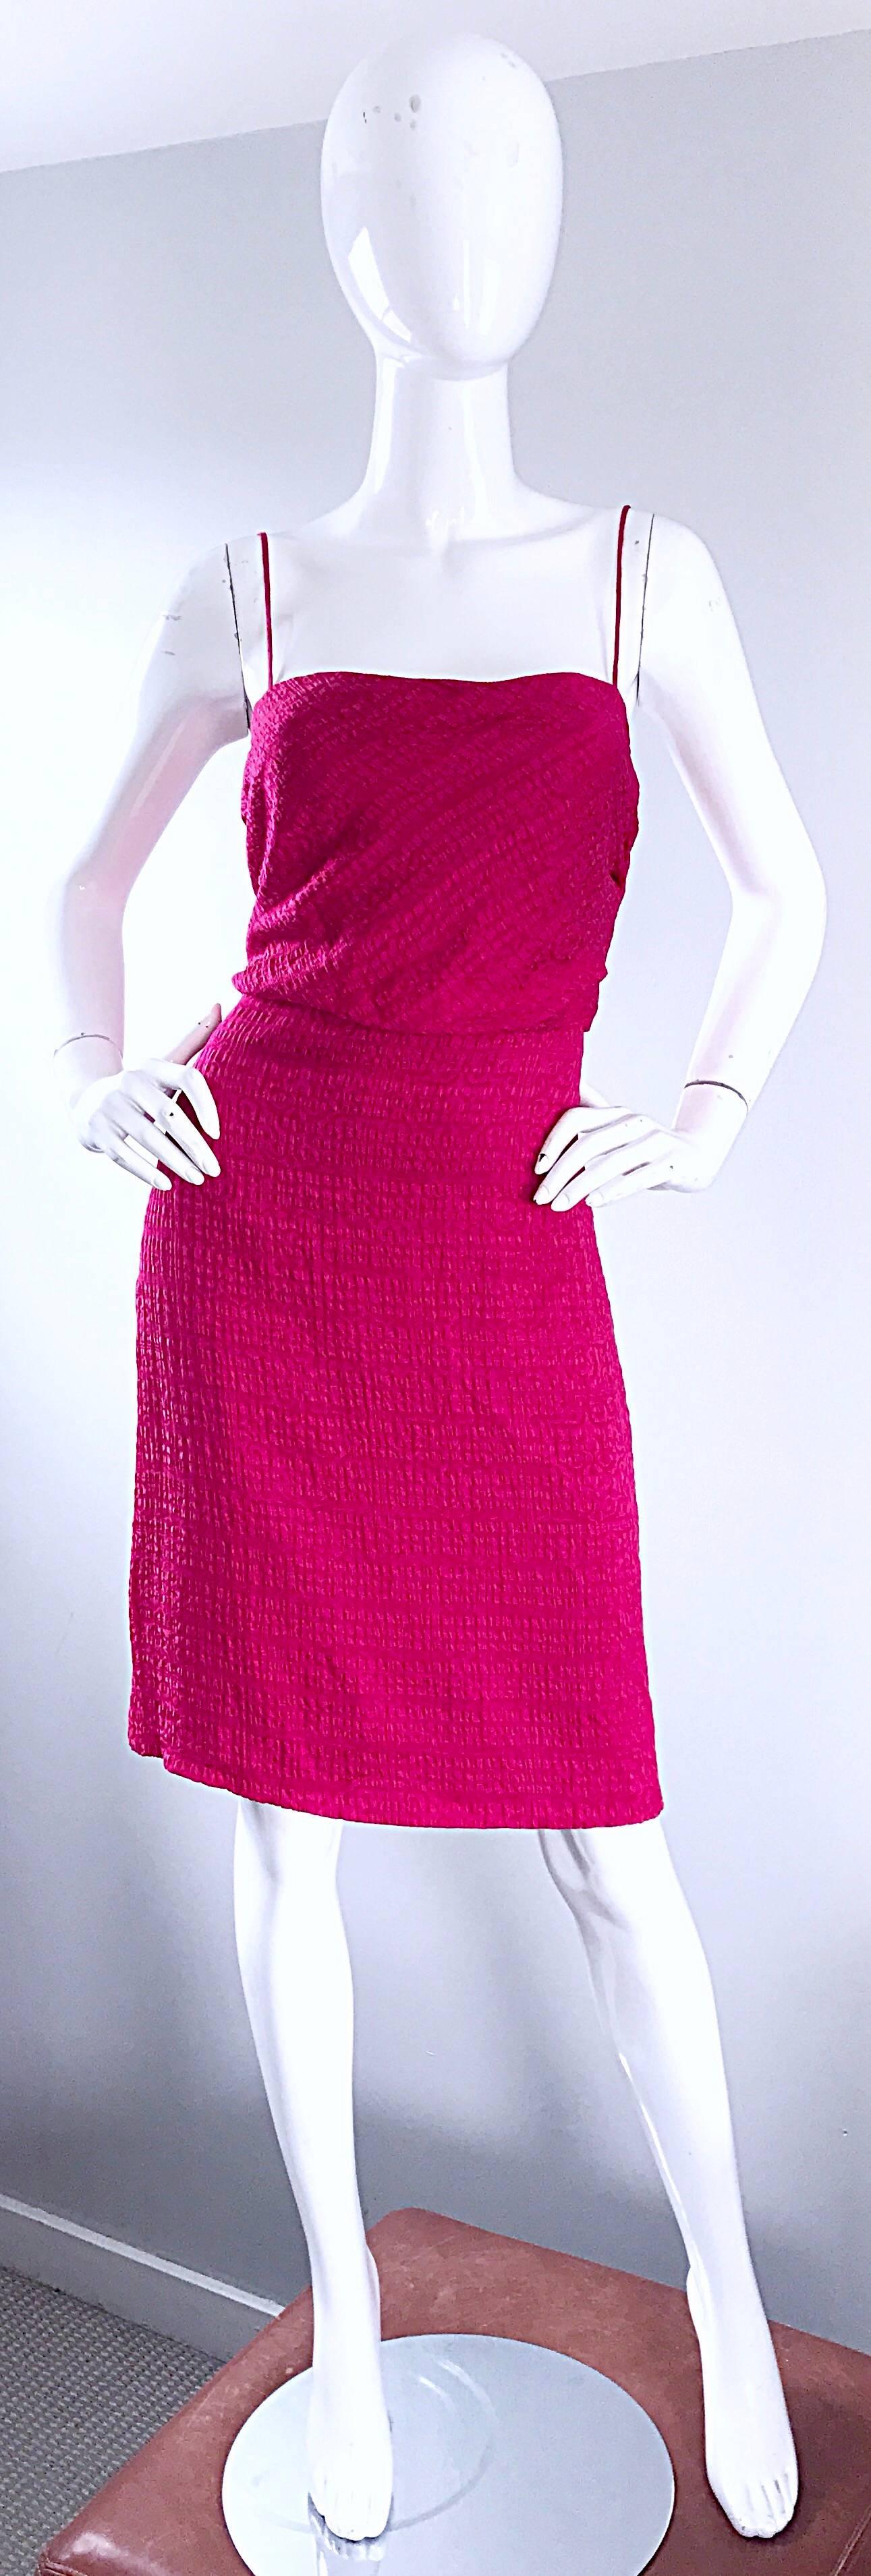 Beau GIROGIO ARMANI des années 1990 choquant framboise chaude  robe en soie texturée rose / fuchsia ! Soie texturée luxueuse. Bretelles spaghetti et fermeture éclair latérale cachée avec fermeture à crochets. La sangle intérieure offre un soutien